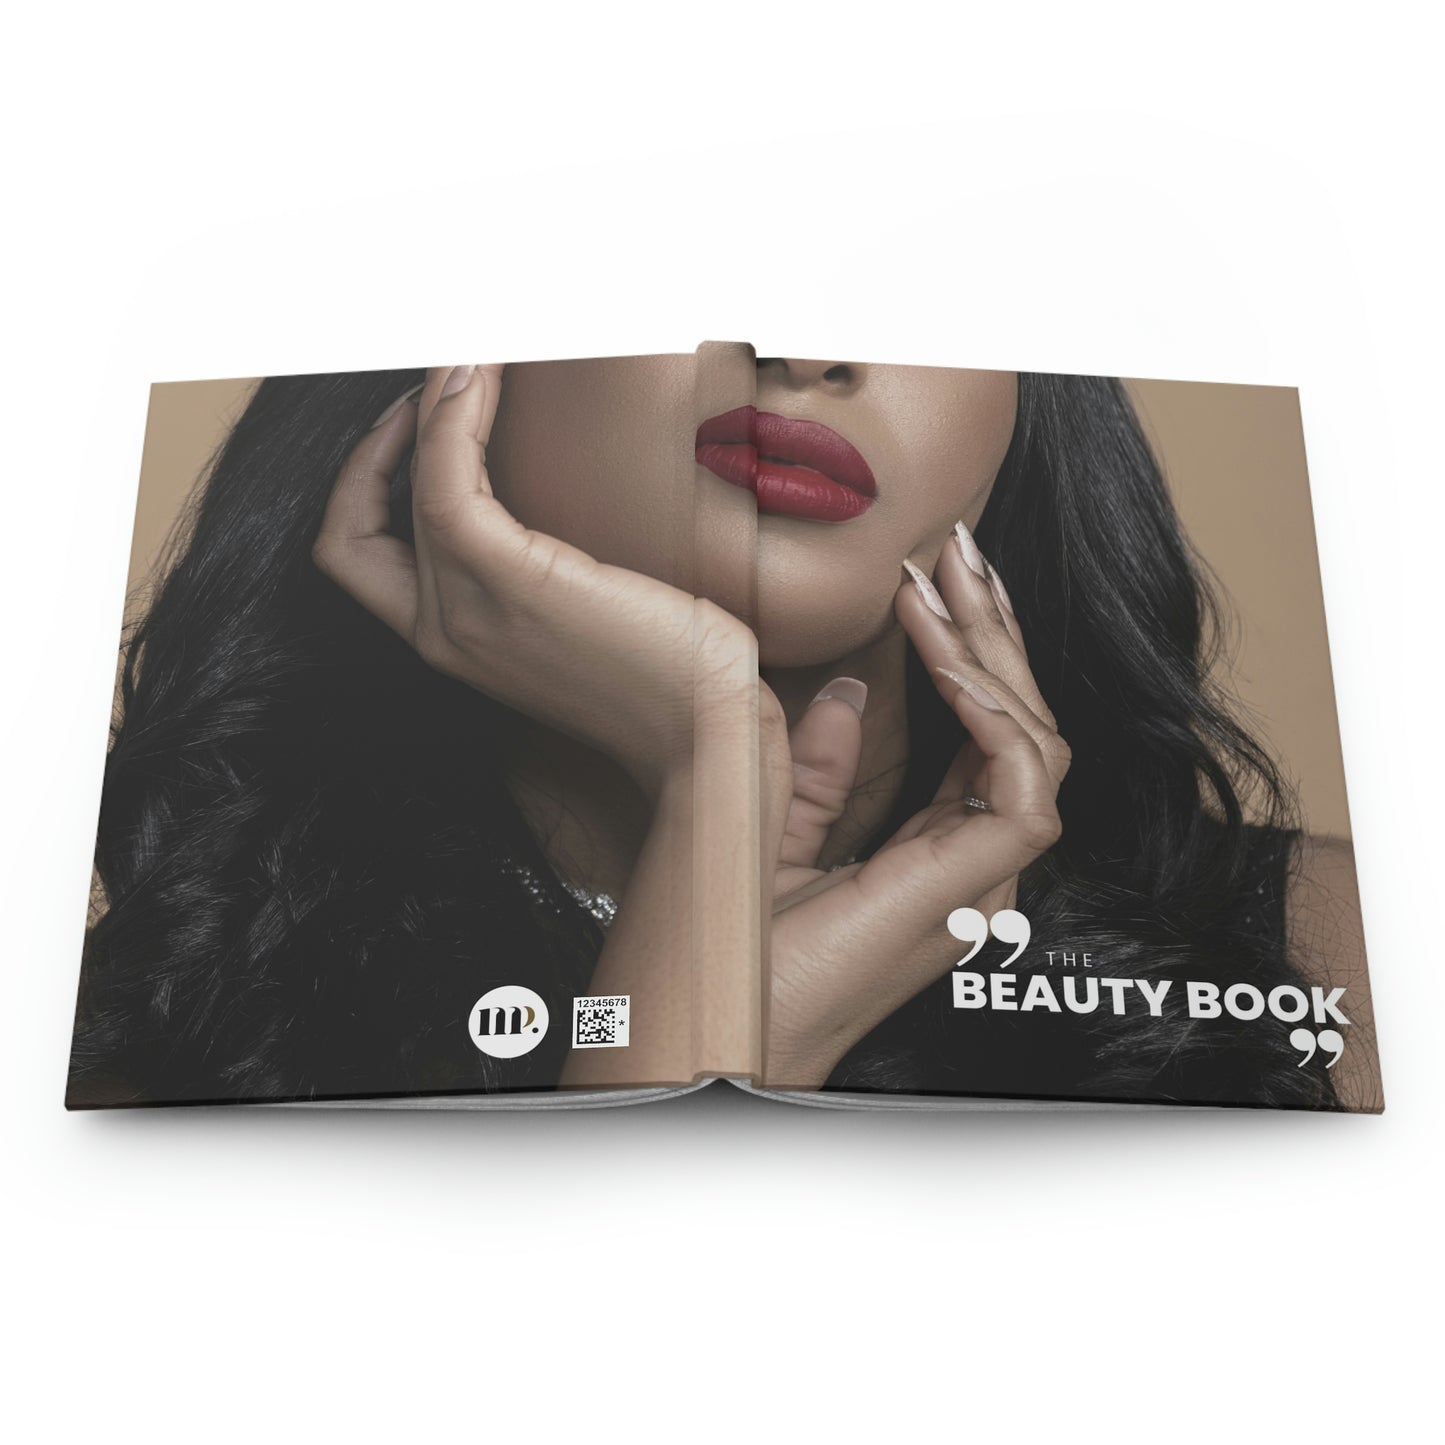 "the beauty book" Velvety Matte Hardcover Journal